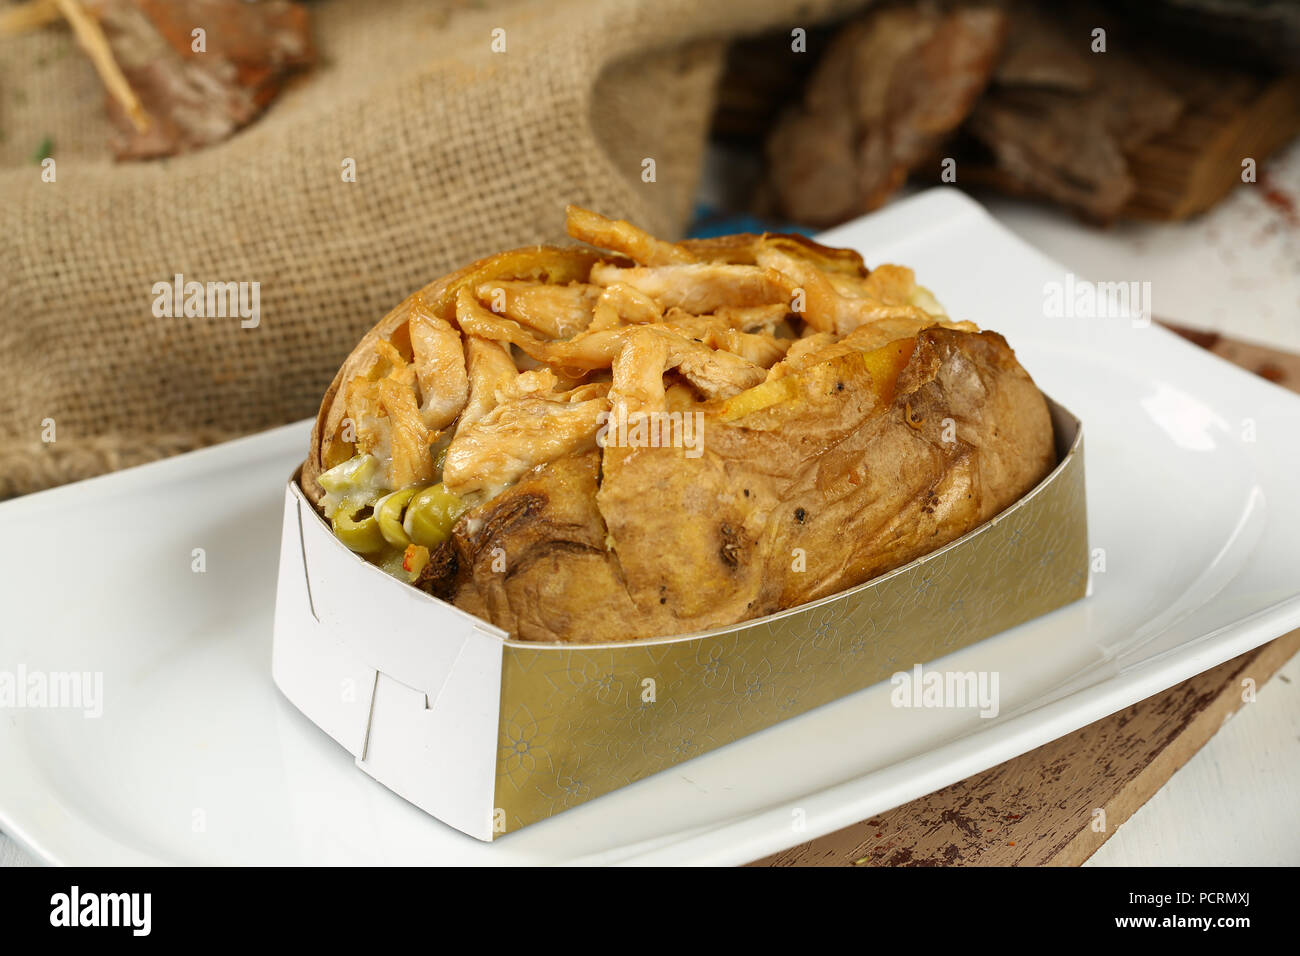 Kumpir / Turkish Baked potato with chicken meat Stock Photo